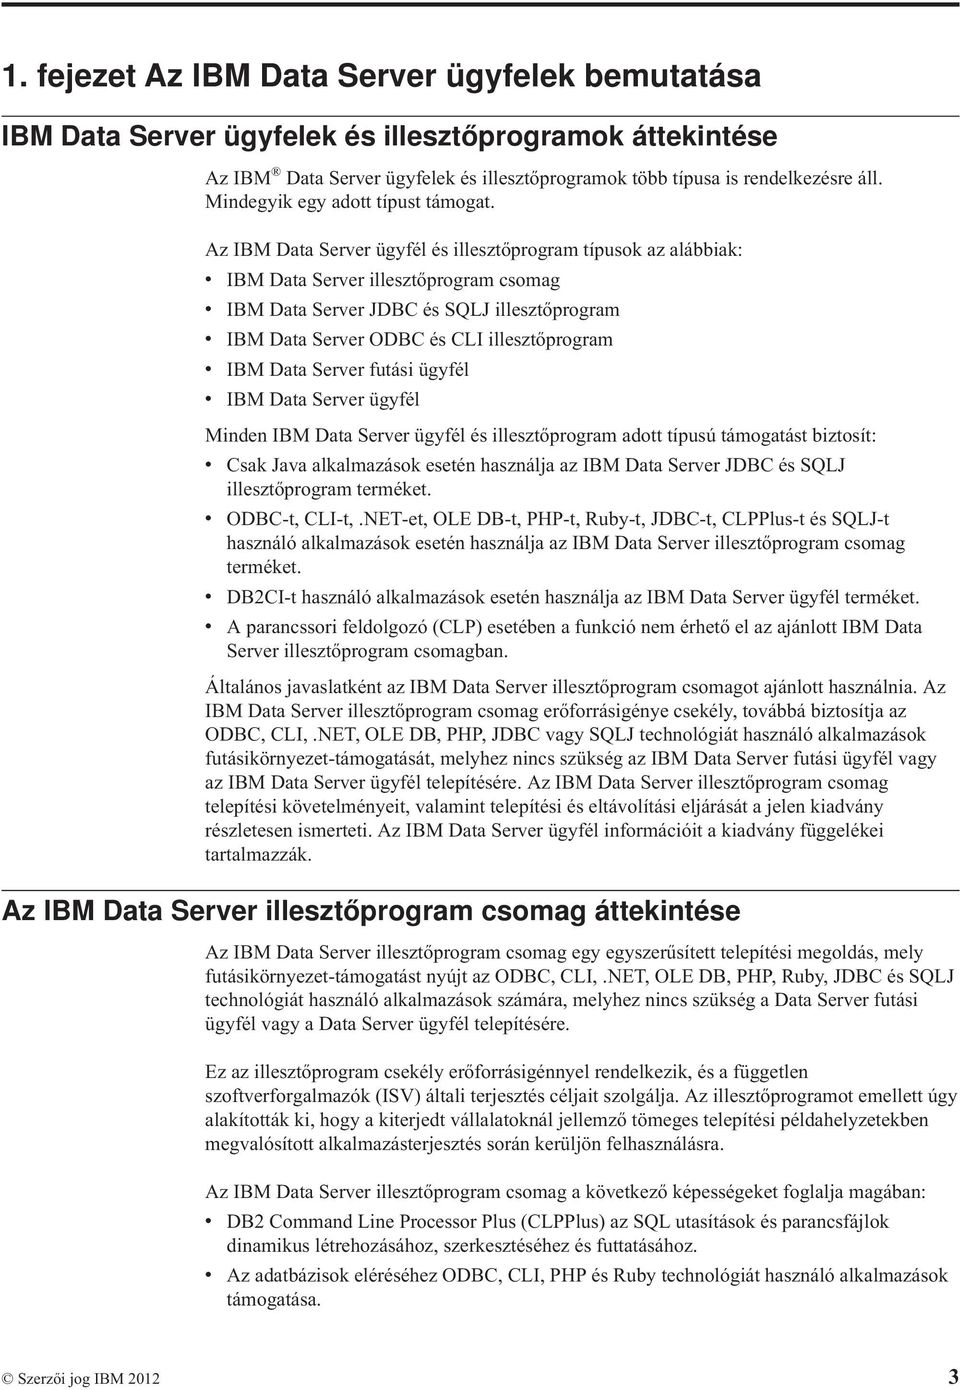 Az IBM Data Server ügyfél és illesztőprogram típusok az alábbiak: v IBM Data Server illesztőprogram csomag v IBM Data Server JDBC és SQLJ illesztőprogram v IBM Data Server ODBC és CLI illesztőprogram